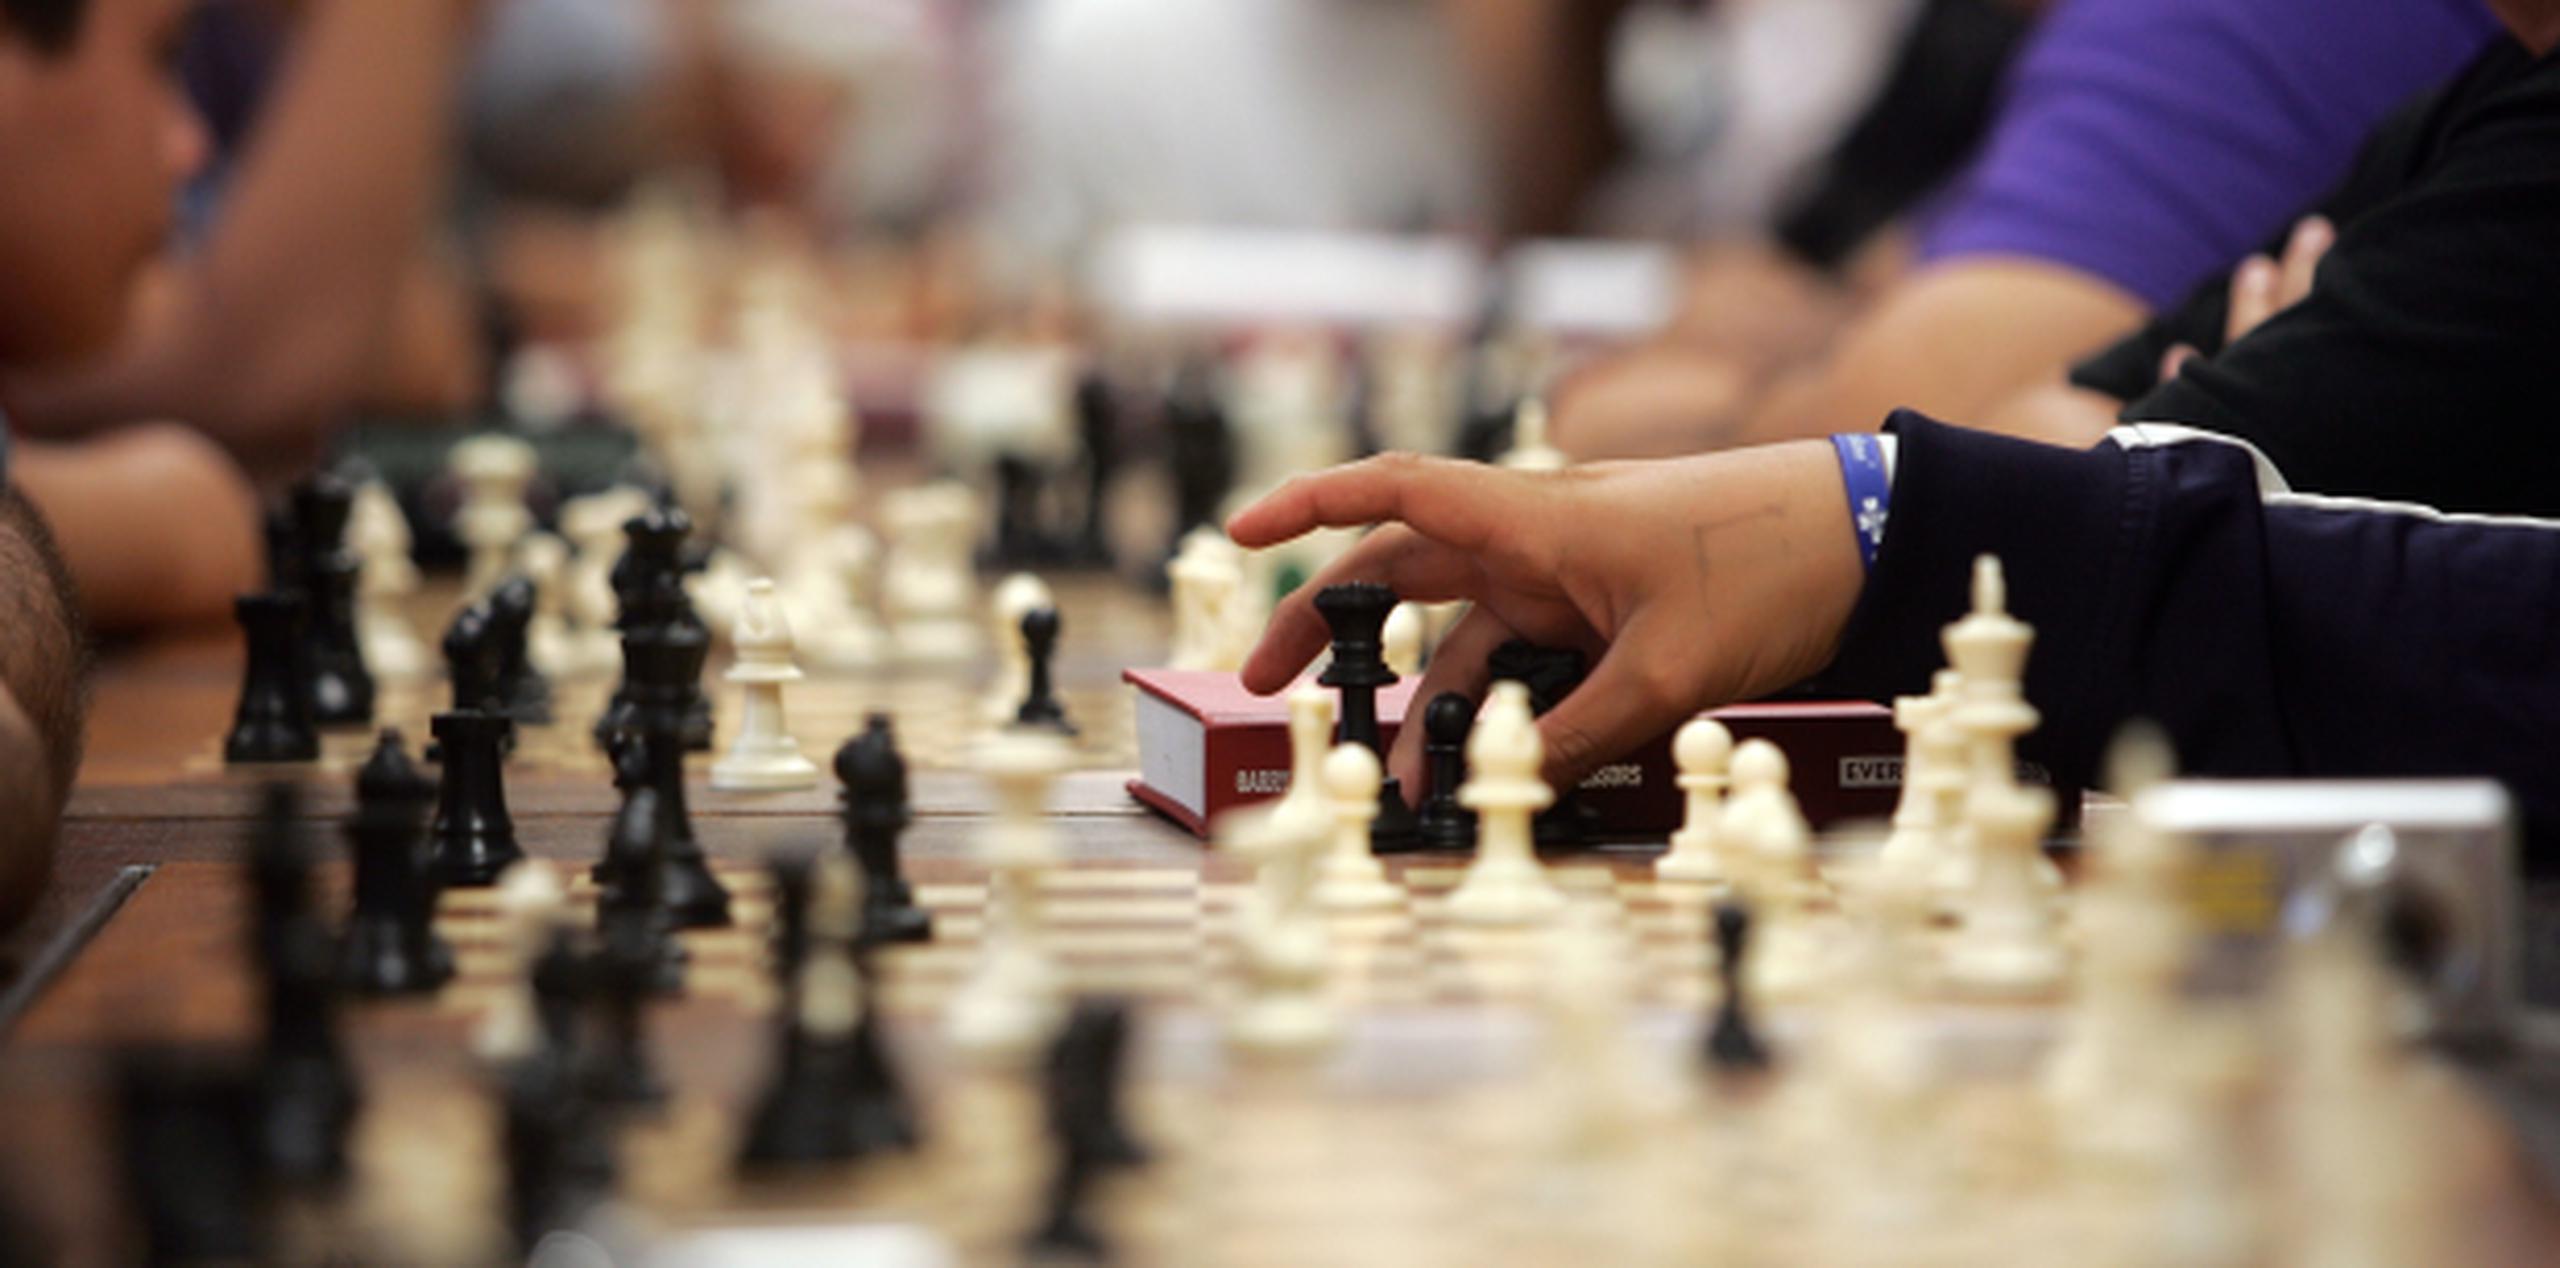 Uno de los países con el programa de ajedrez obligatorio más desarrollado es Armenia. (Archivo)